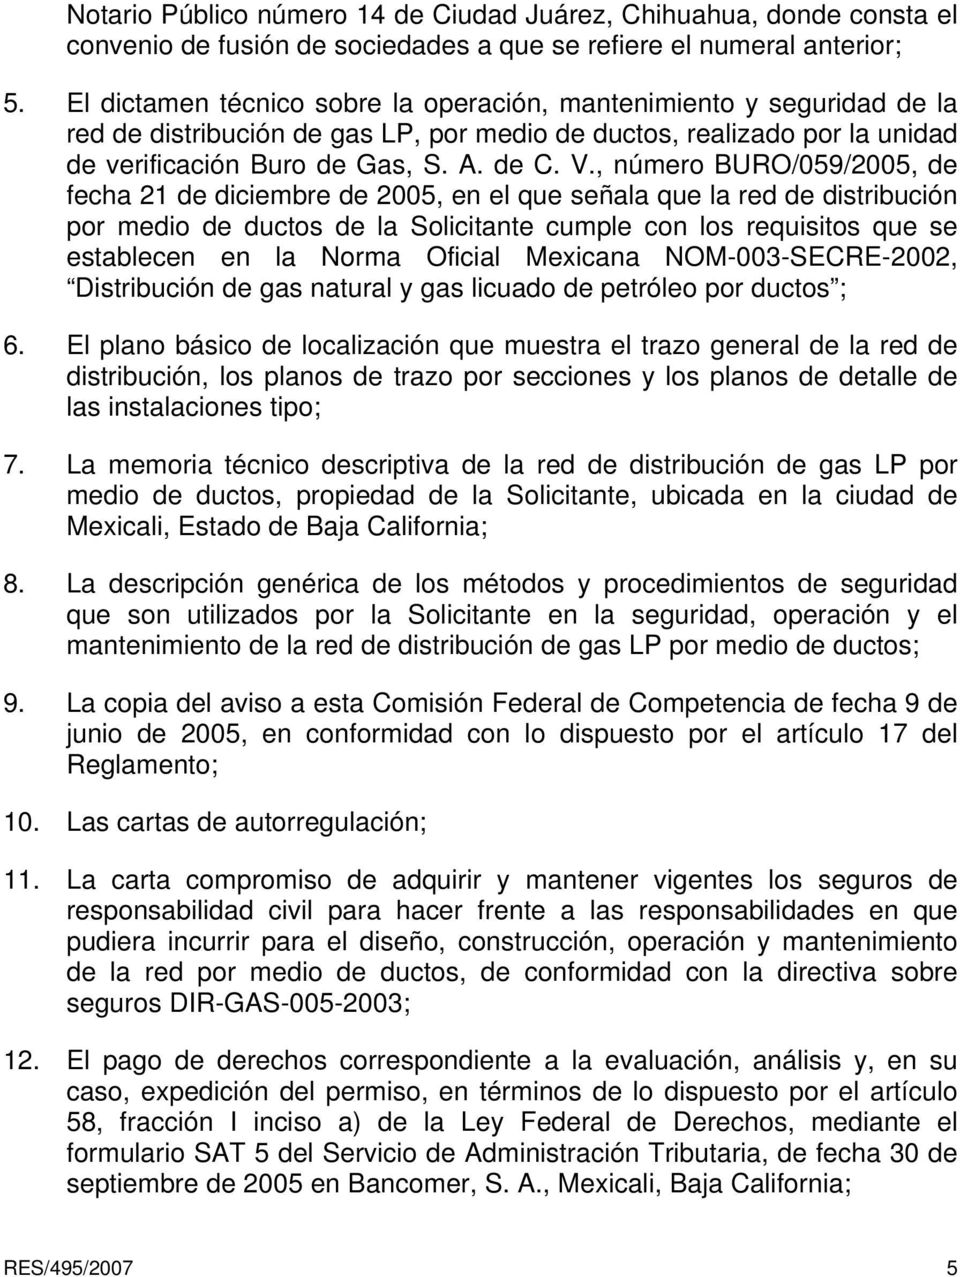 , número BURO/059/2005, de fecha 21 de diciembre de 2005, en el que señala que la red de distribución por medio de ductos de la Solicitante cumple con los requisitos que se establecen en la Norma